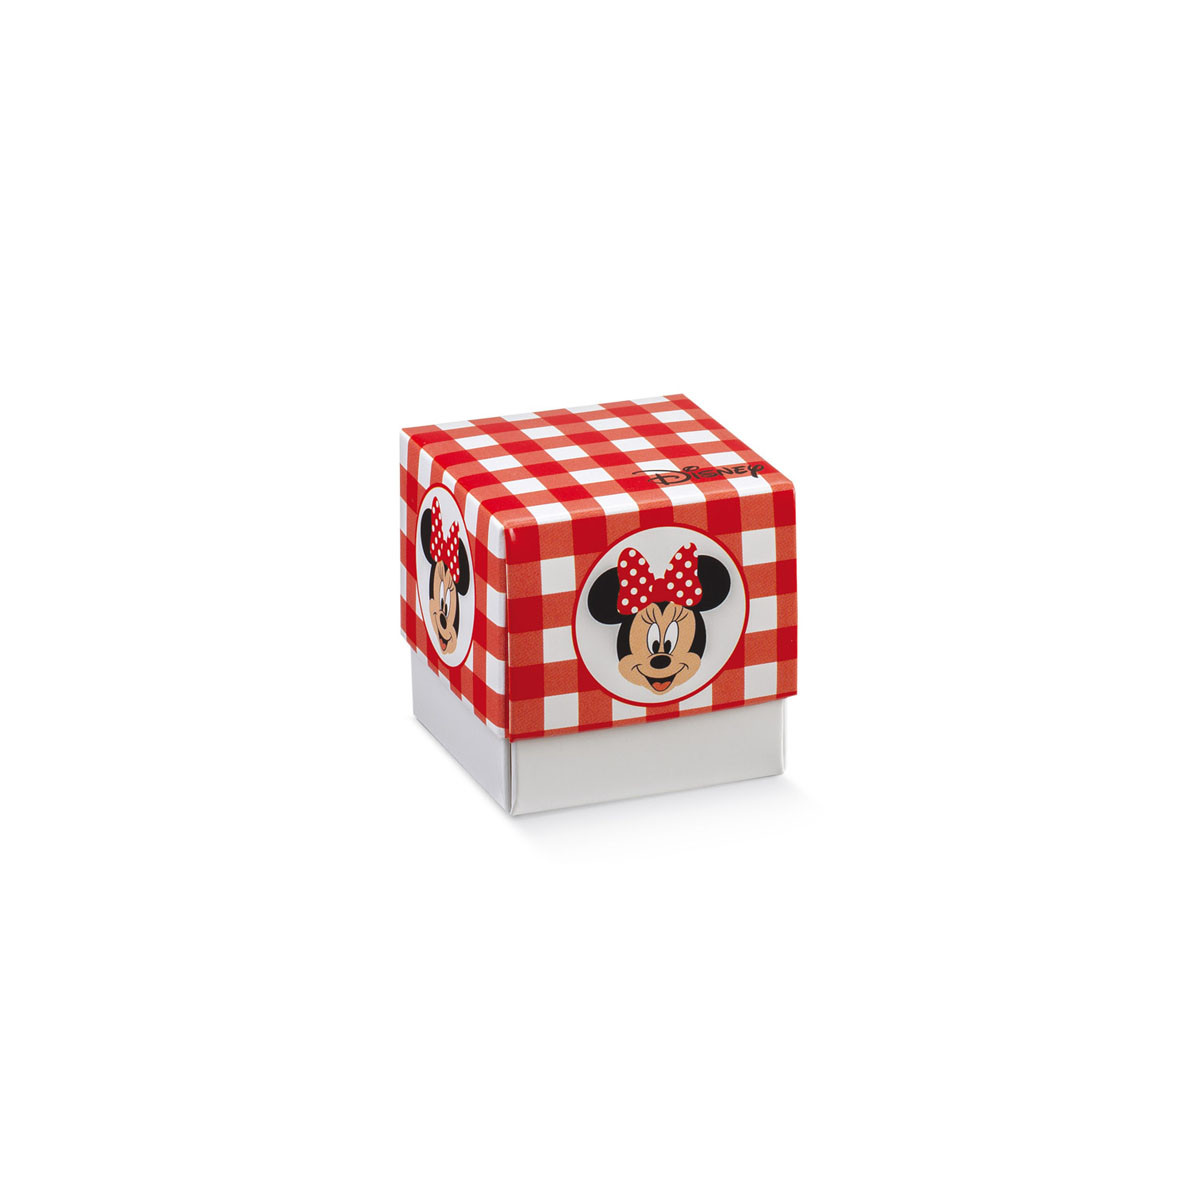 x1 Boite à dragées cube Minnie rouge